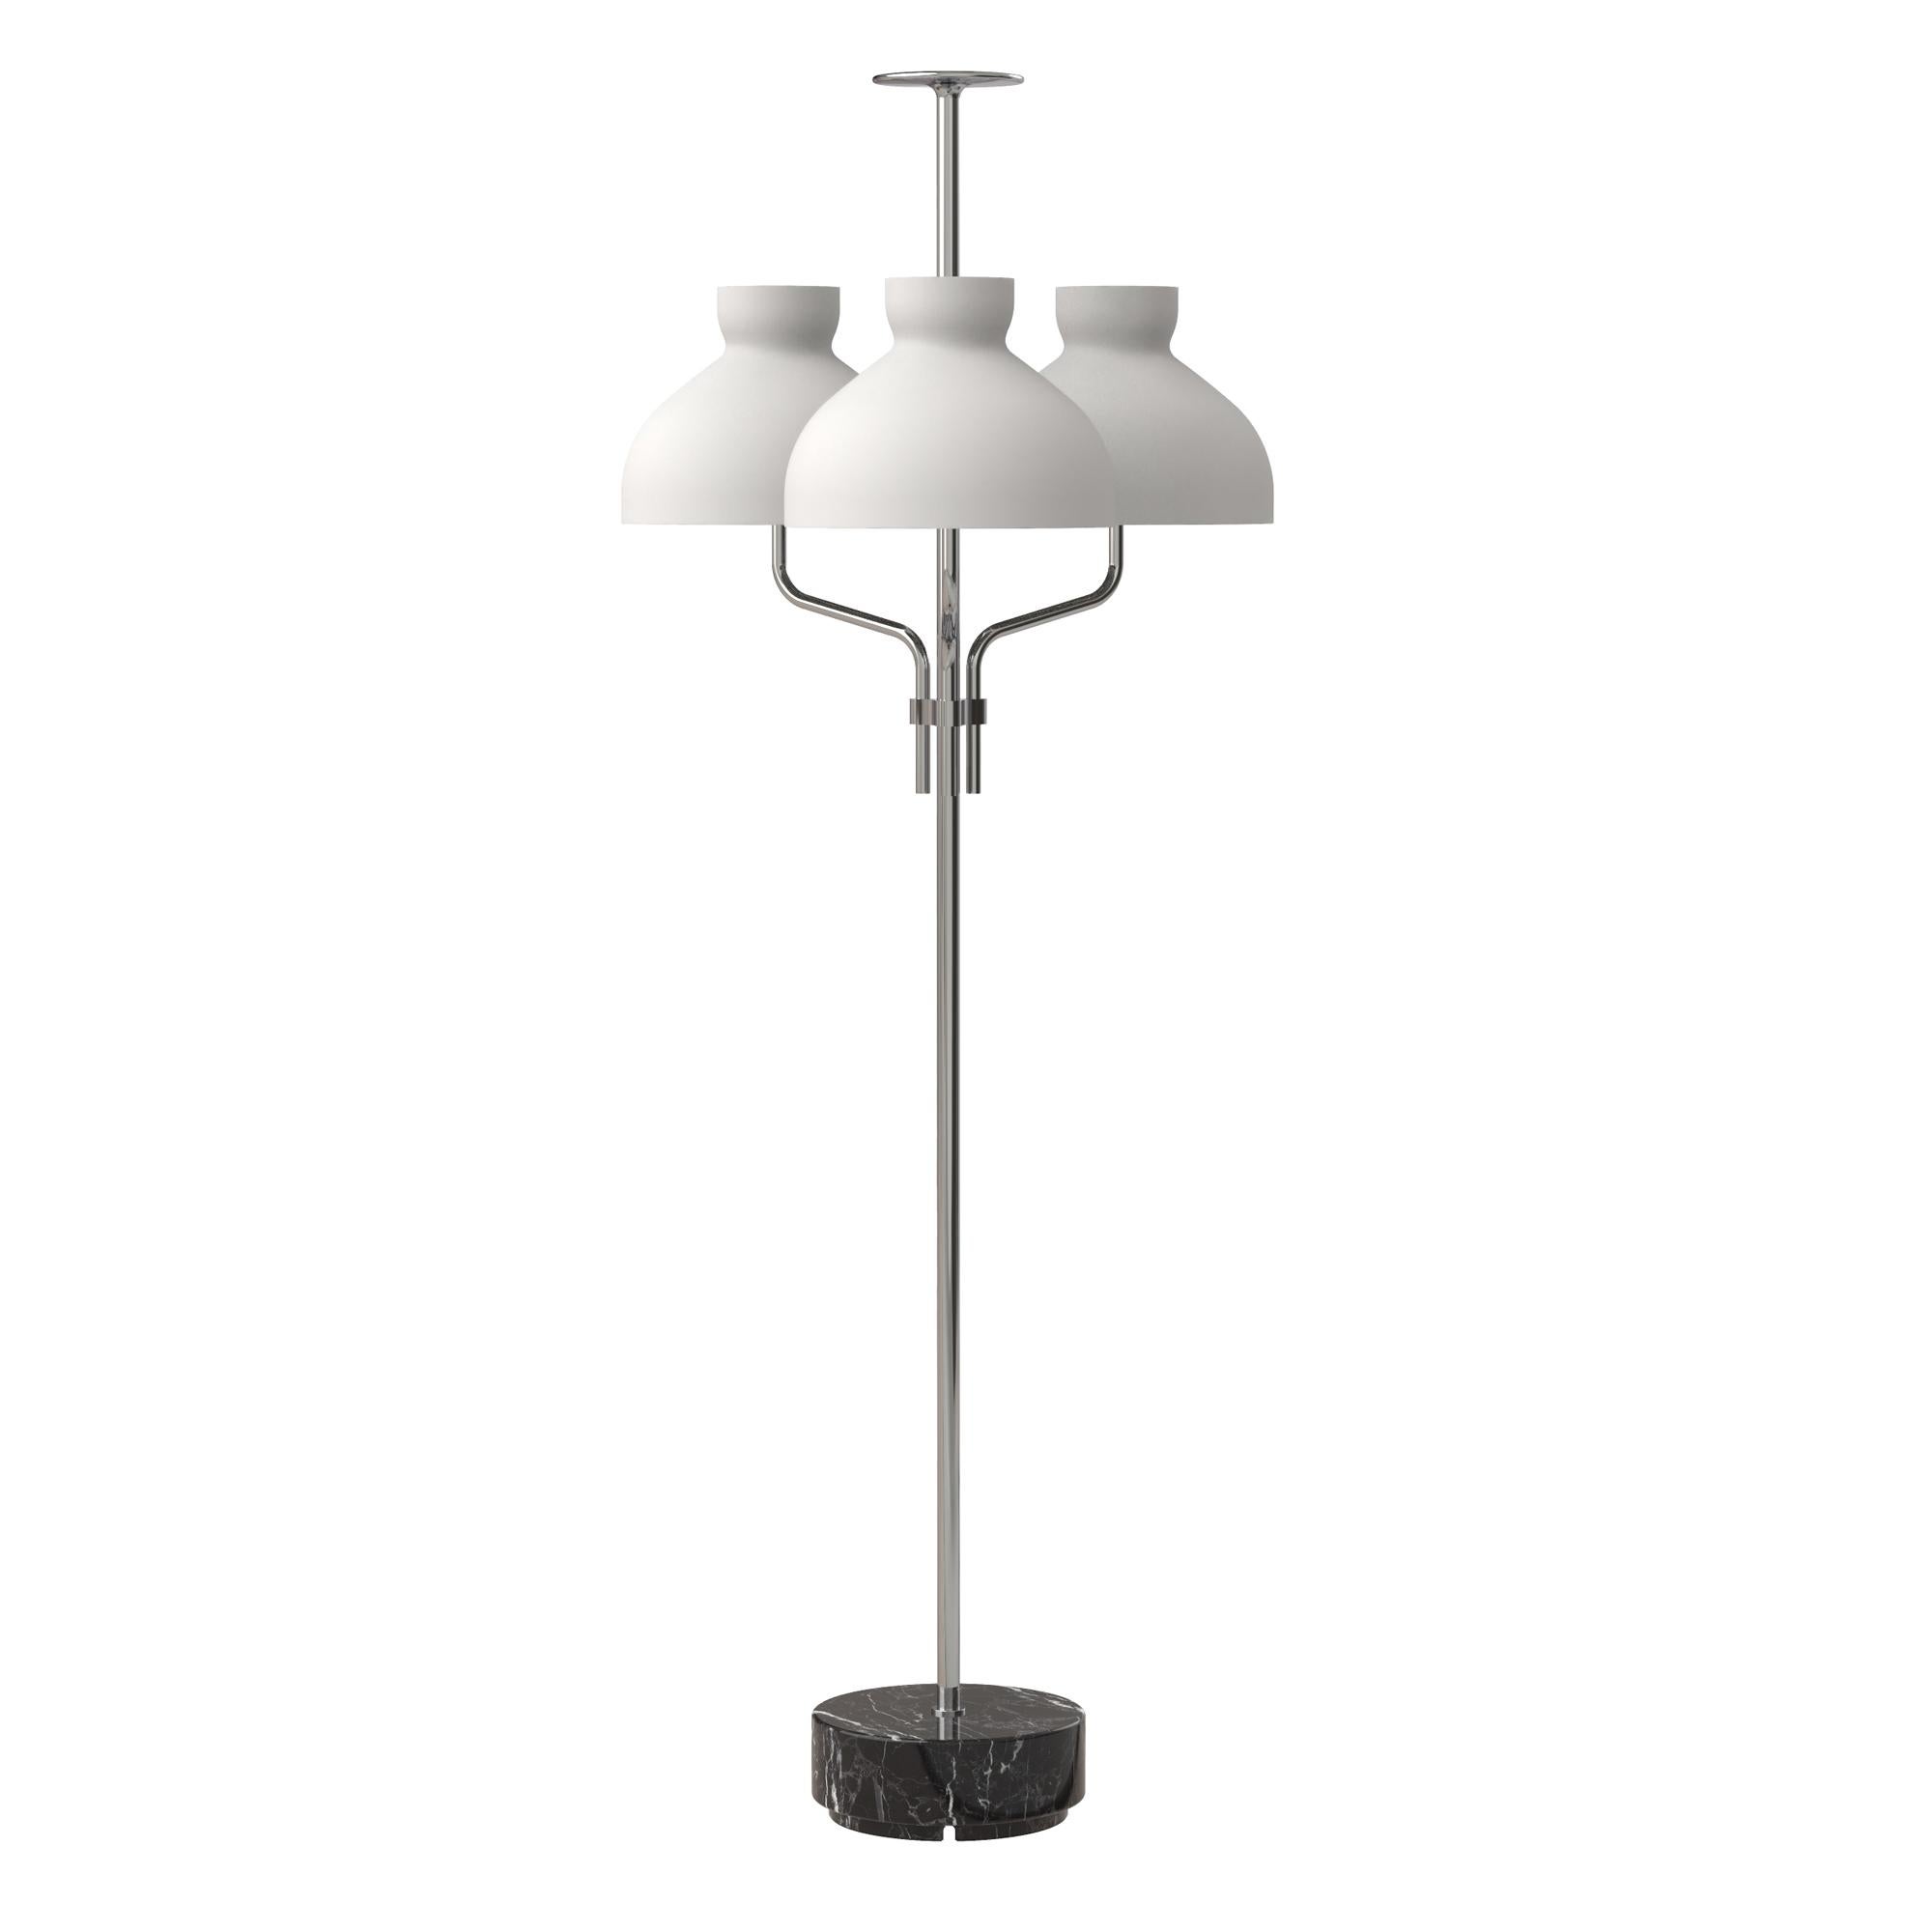 Ignazio Gardella 'Arenzano Tre Fiamme' Floor Lamp in Black Marble and Chrome For Sale 1